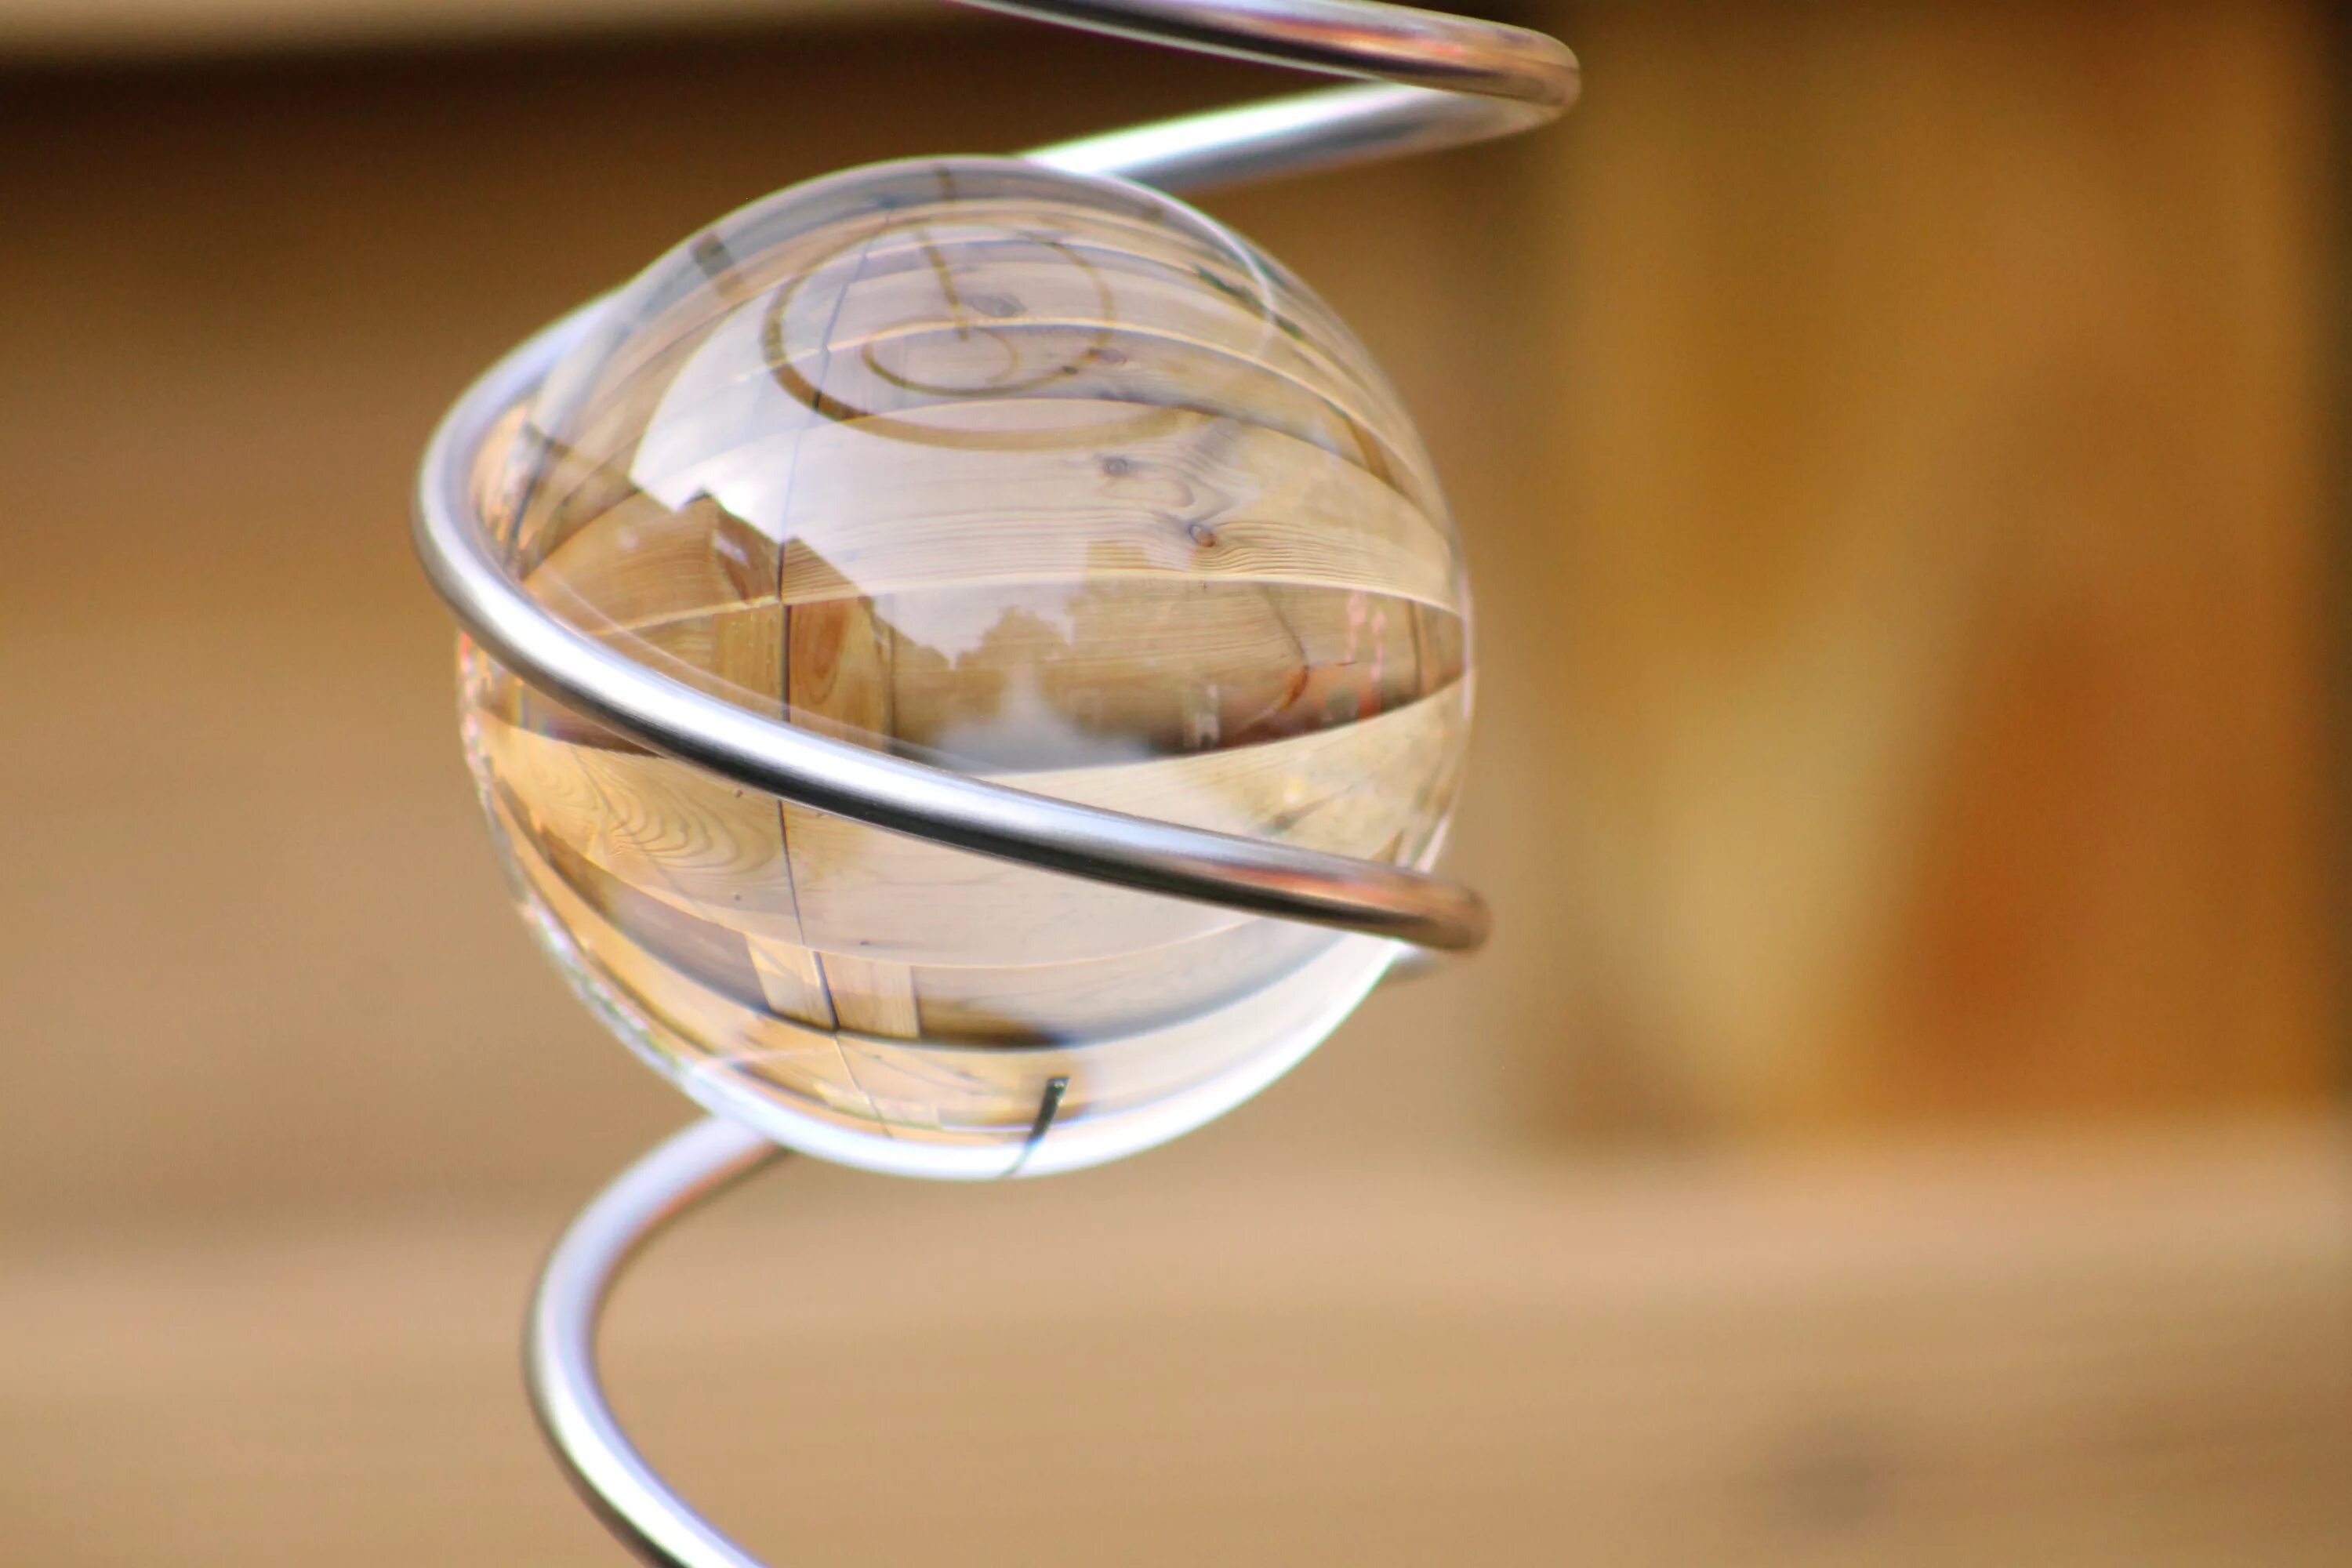 К первой чаше подвесим стеклянный шар. Стеклянные шары. Шар стеклянный прозрачный для декора. Стеклянный шар на столе. Стакан с шариками стеклянными.